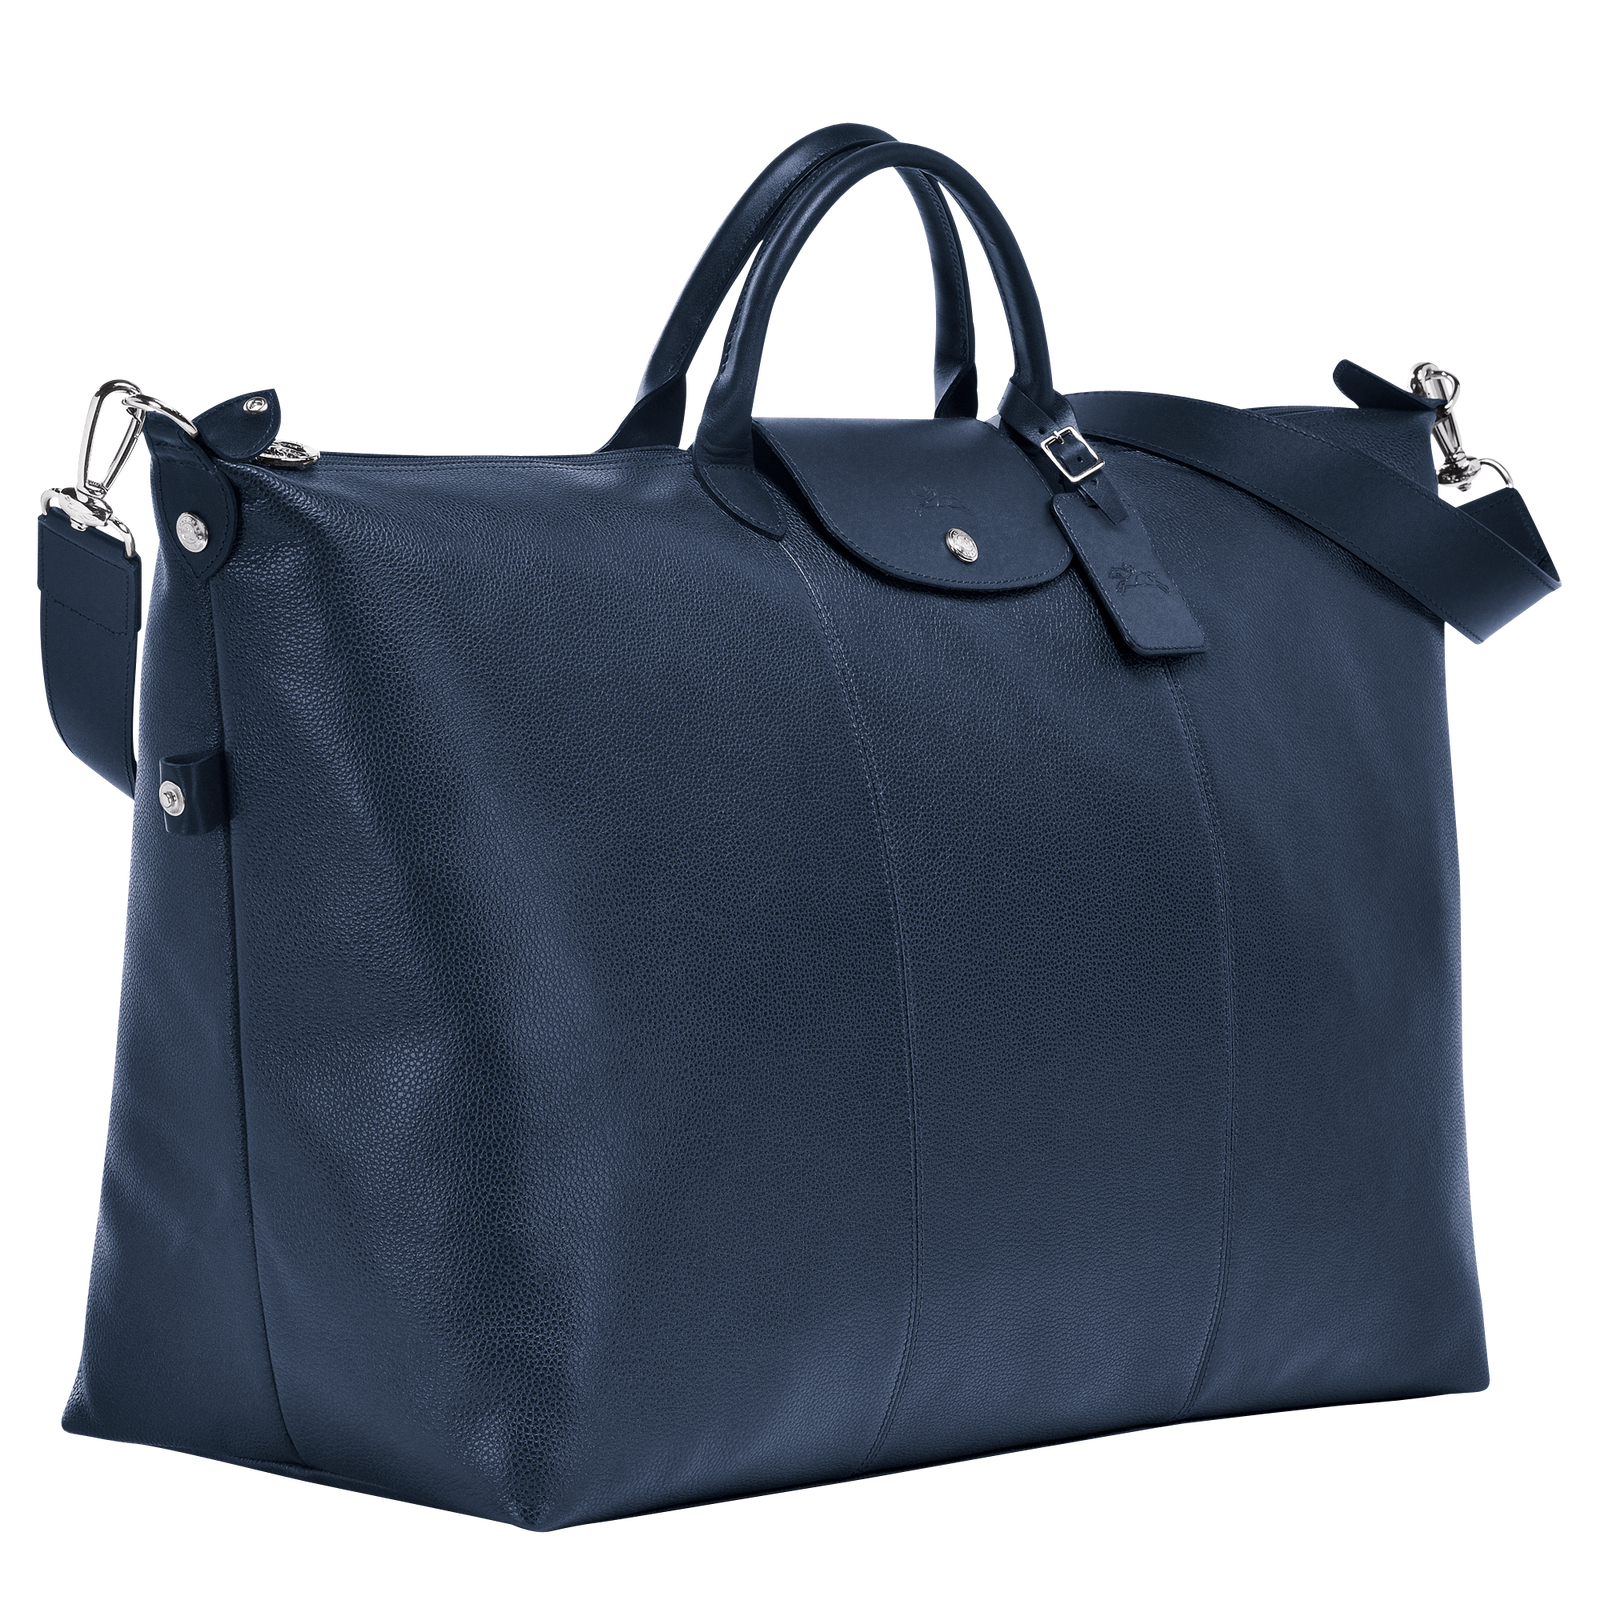 Le Foulonné 系列 旅行袋 S, 海軍藍色